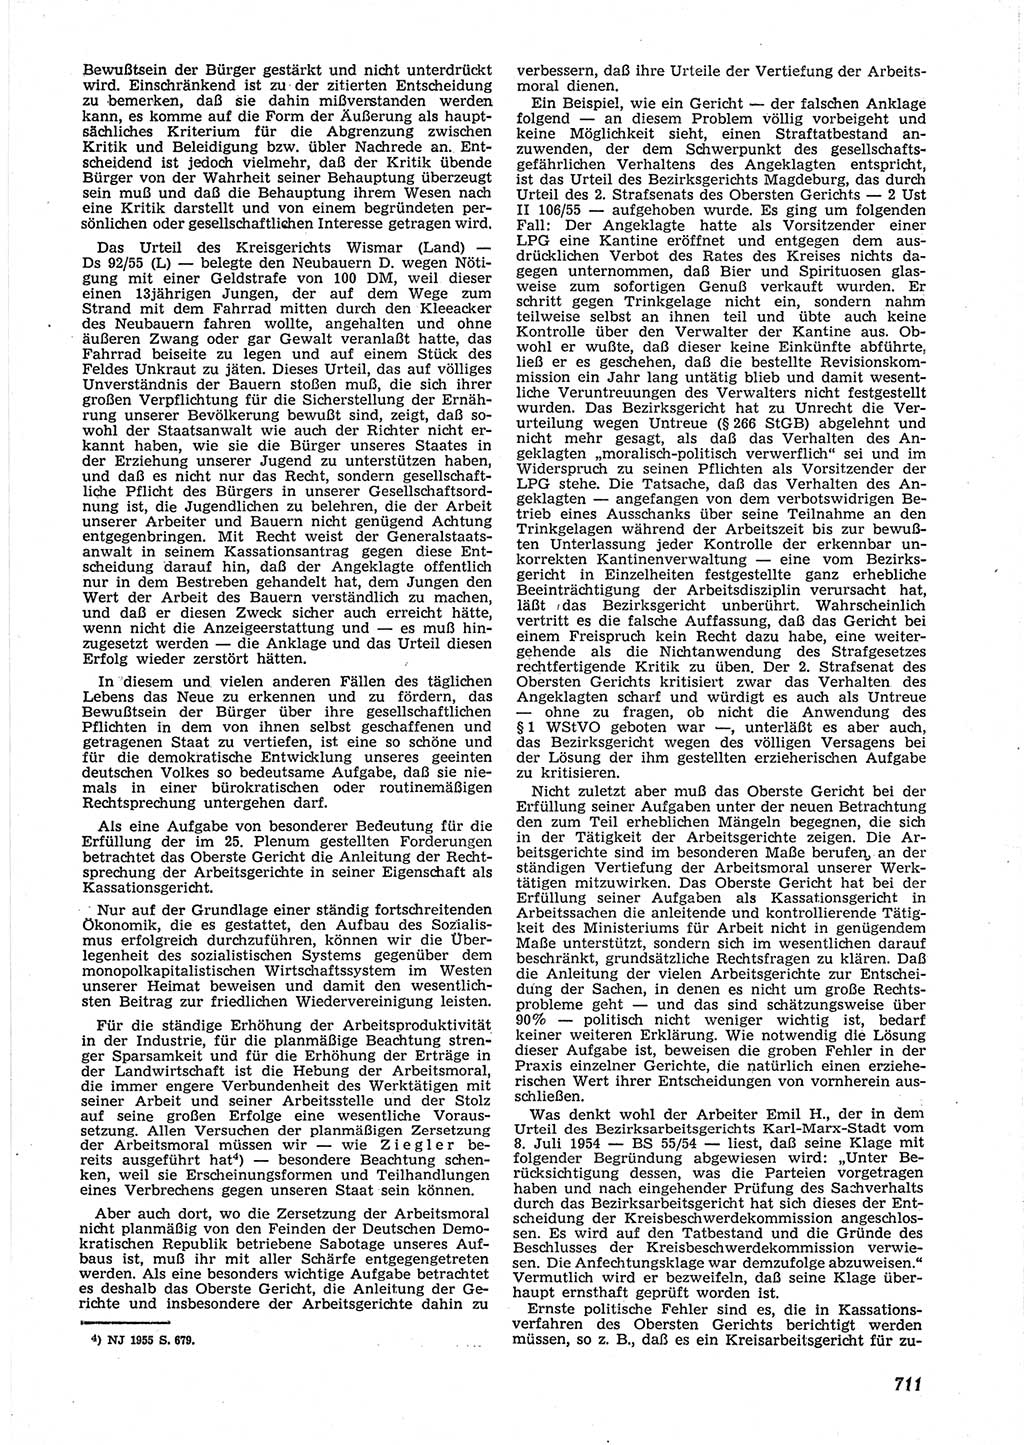 Neue Justiz (NJ), Zeitschrift für Recht und Rechtswissenschaft [Deutsche Demokratische Republik (DDR)], 9. Jahrgang 1955, Seite 711 (NJ DDR 1955, S. 711)